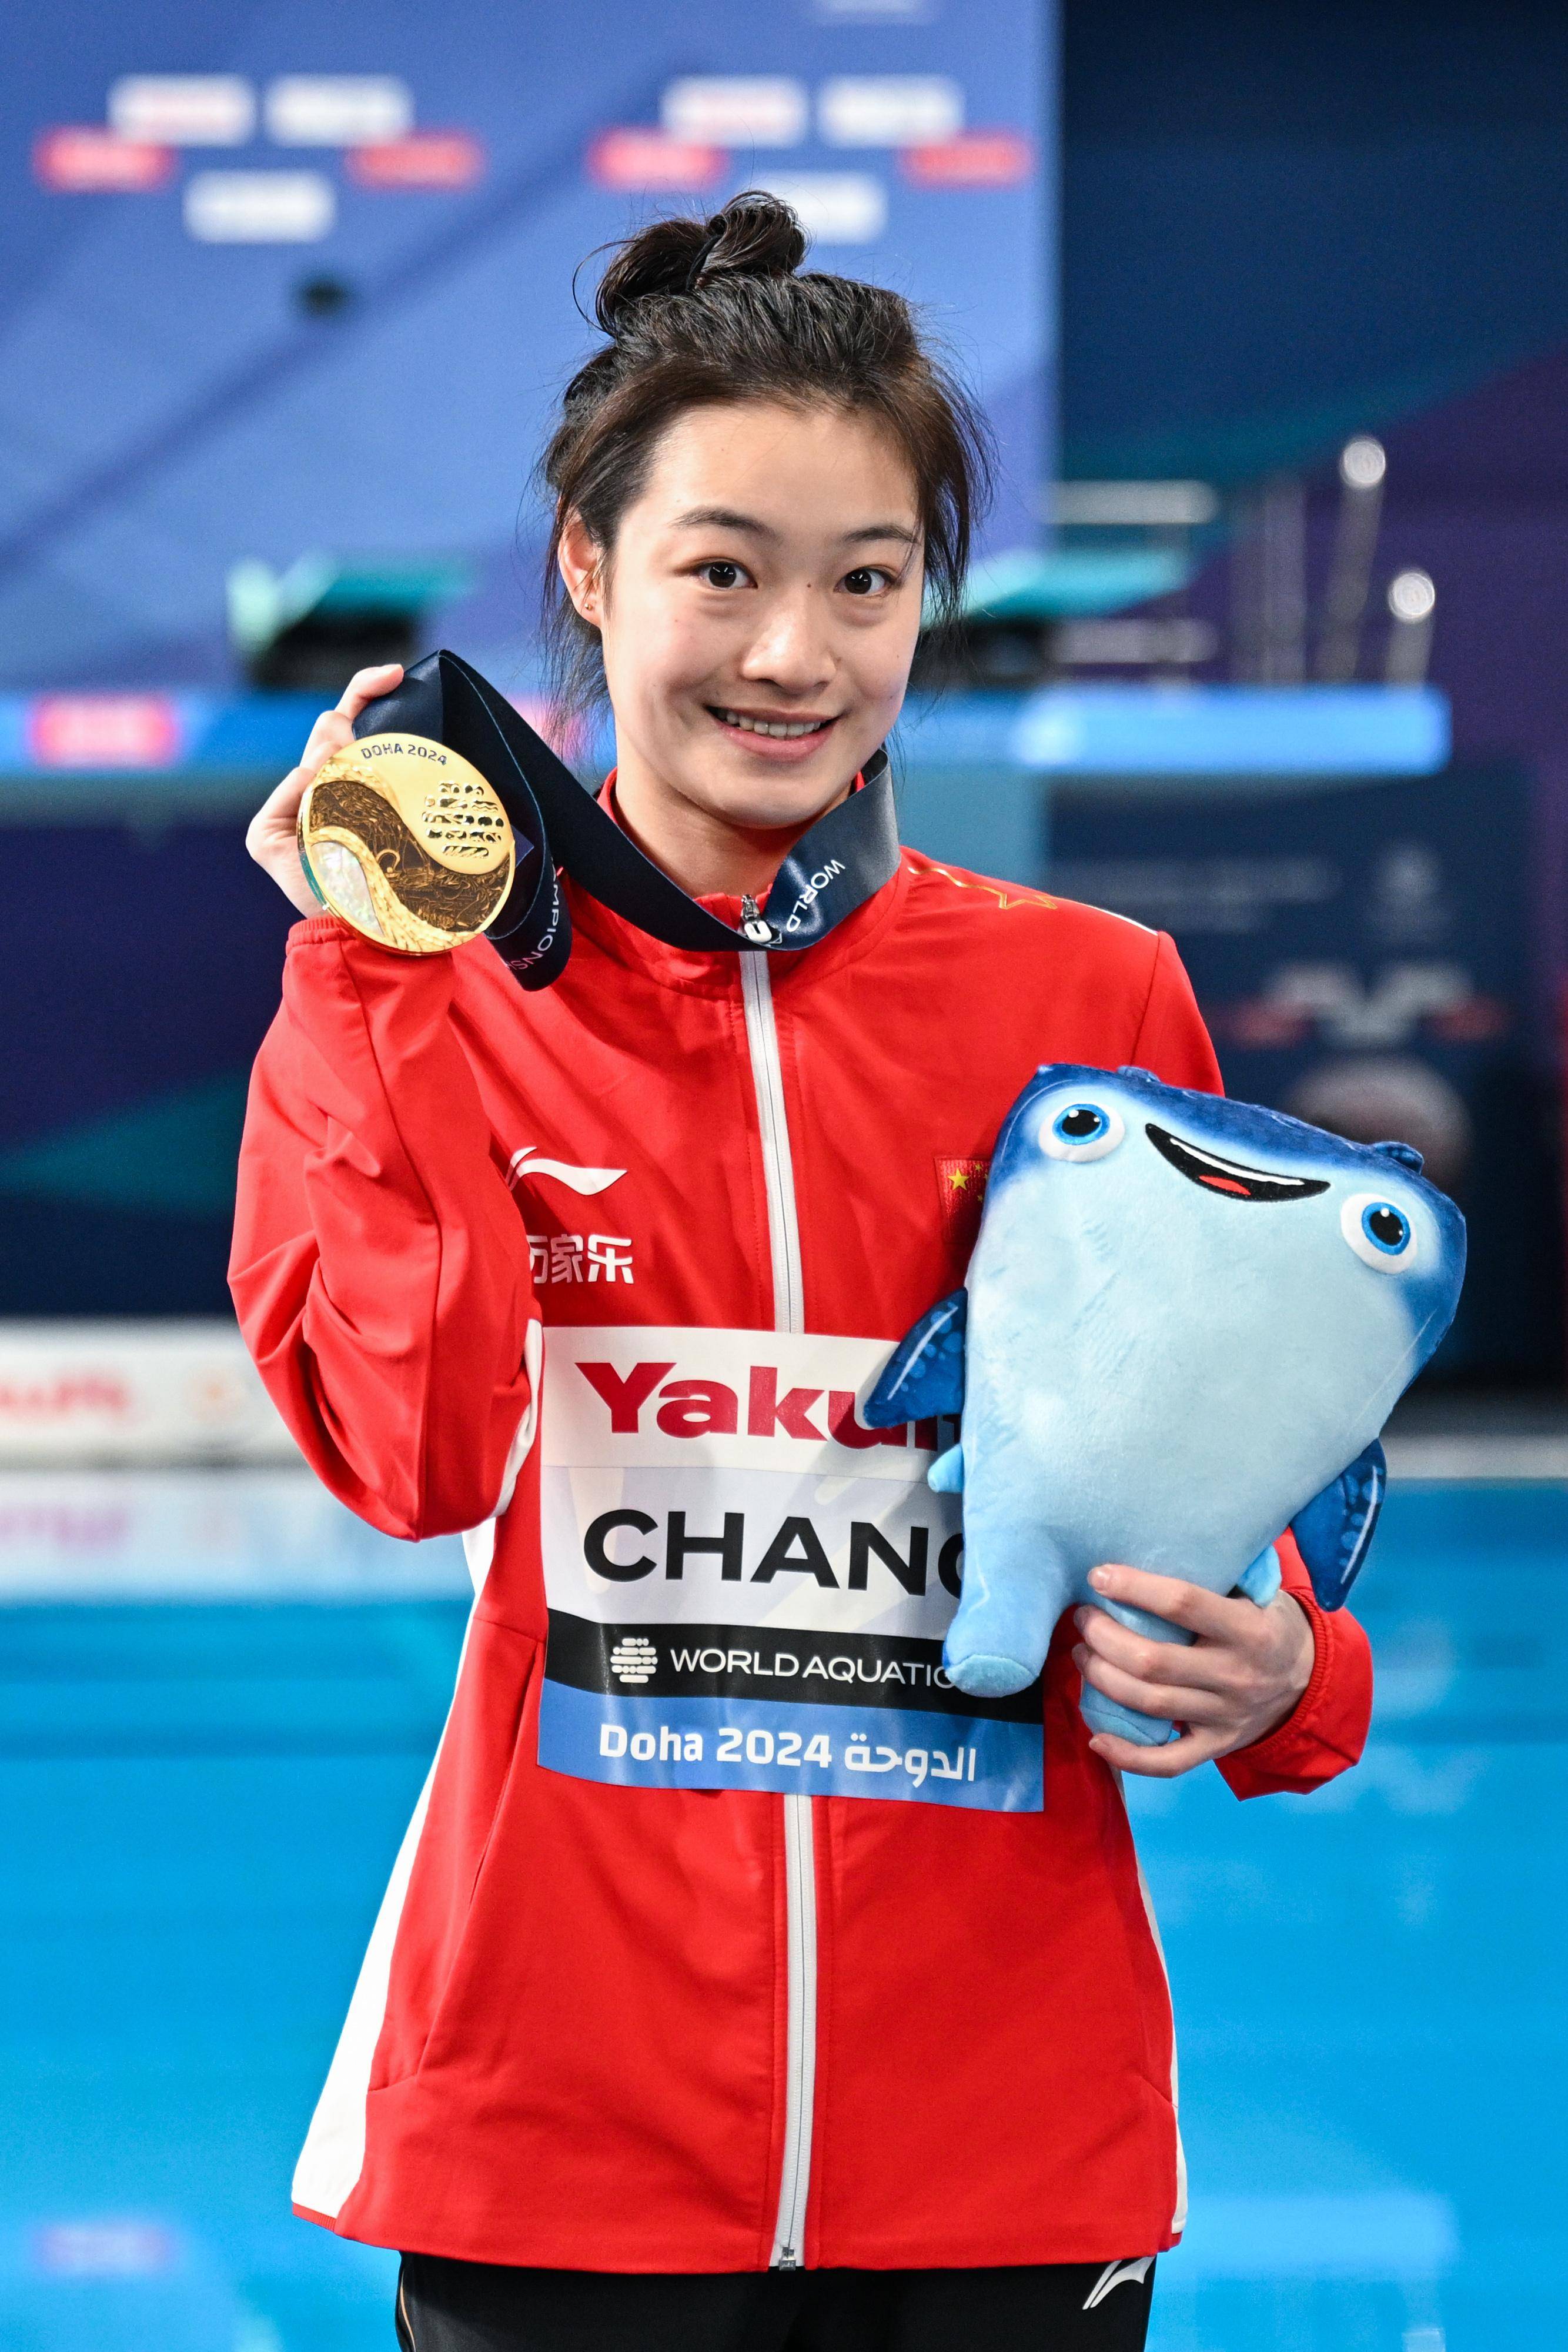 游泳世锦赛:昌雅妮,陈艺文包揽女子3米板冠亚军